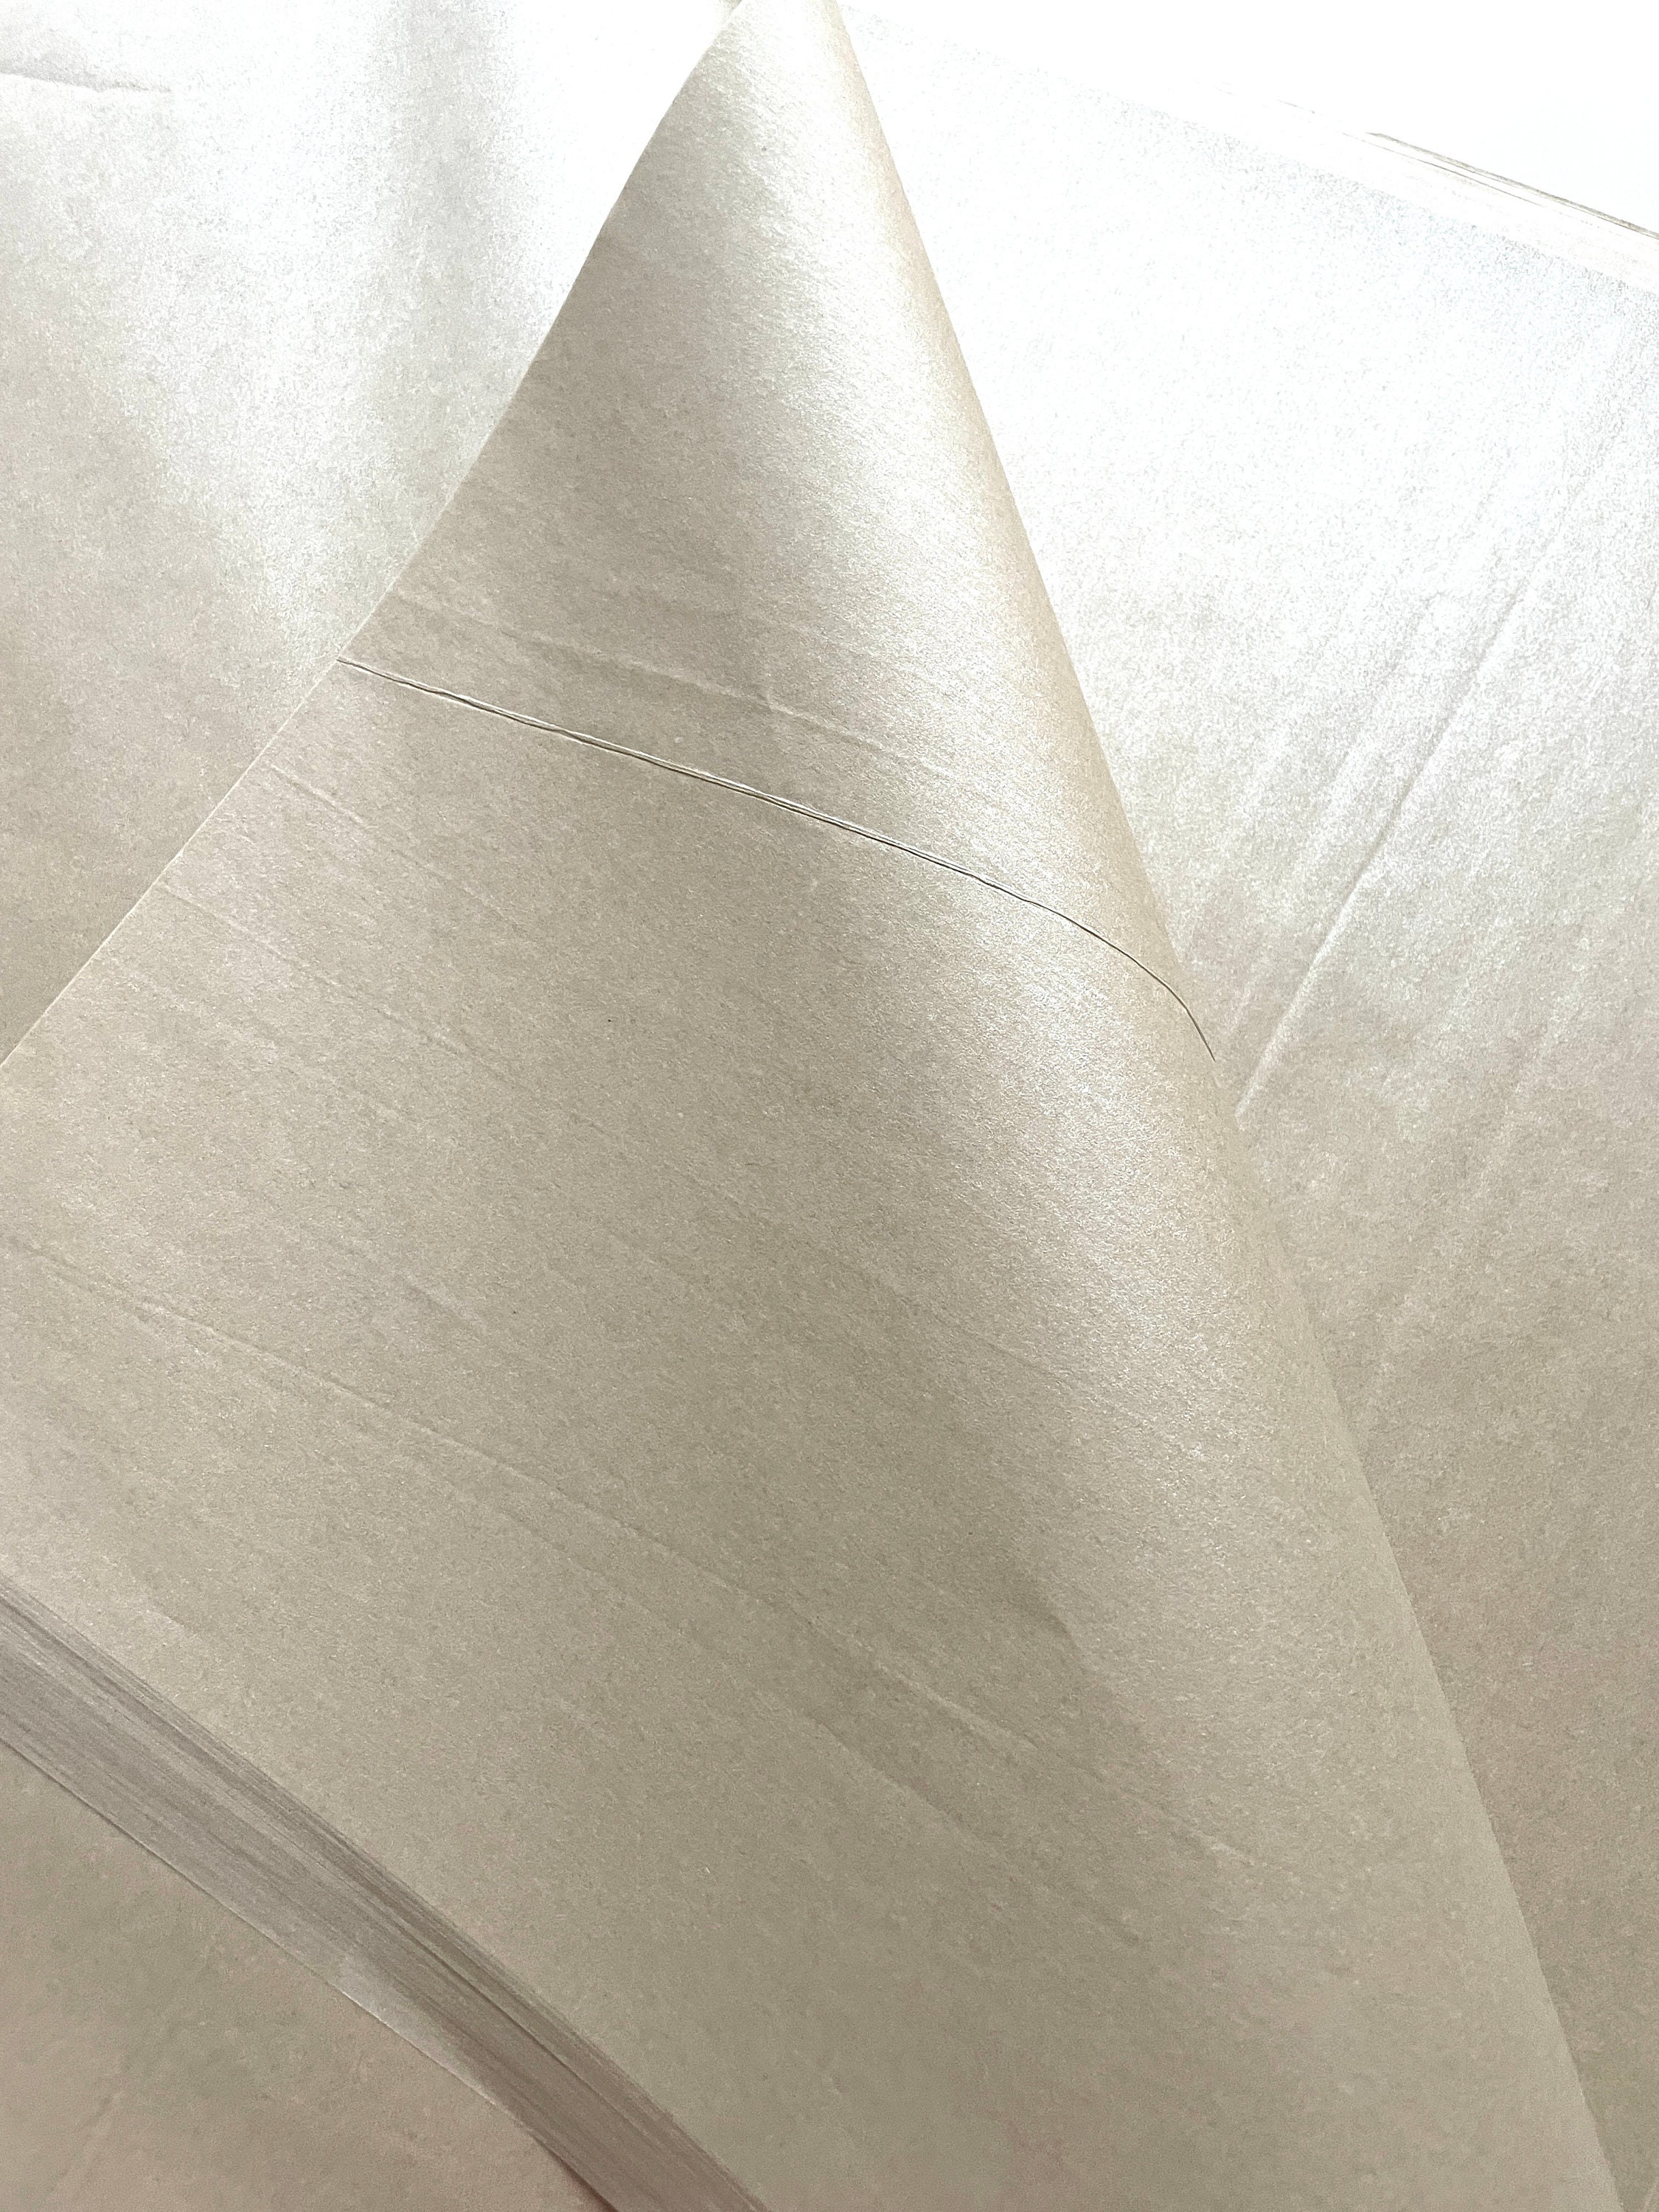 White Tissue Paper Sheets 18 x 28